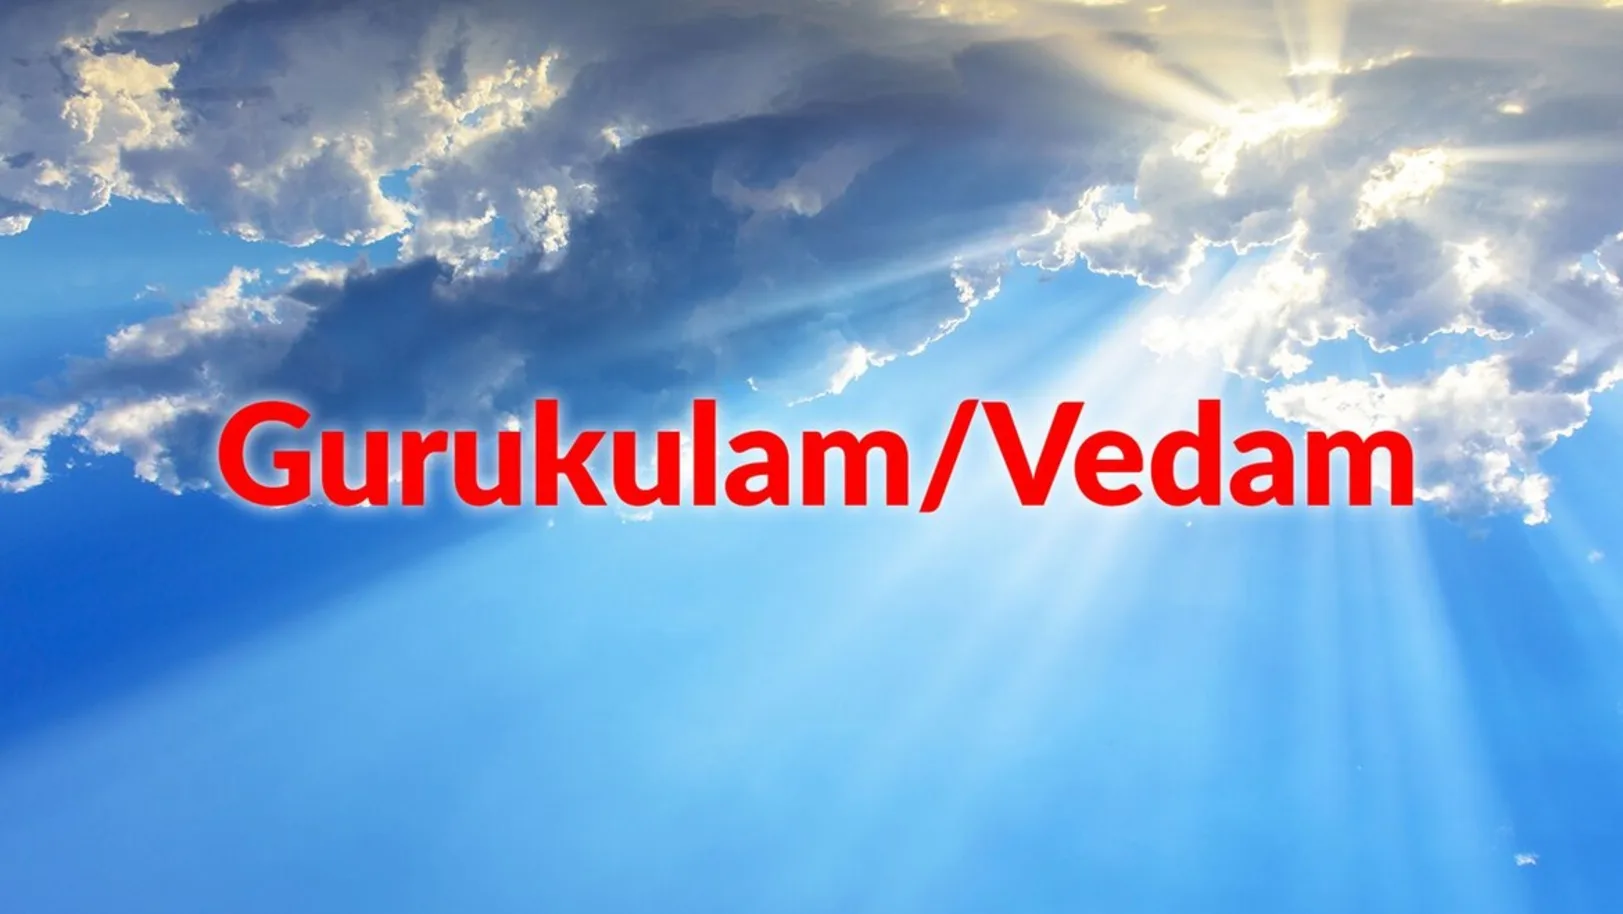 Gurukulam/Vedam Streaming Now On Aastha Tamil